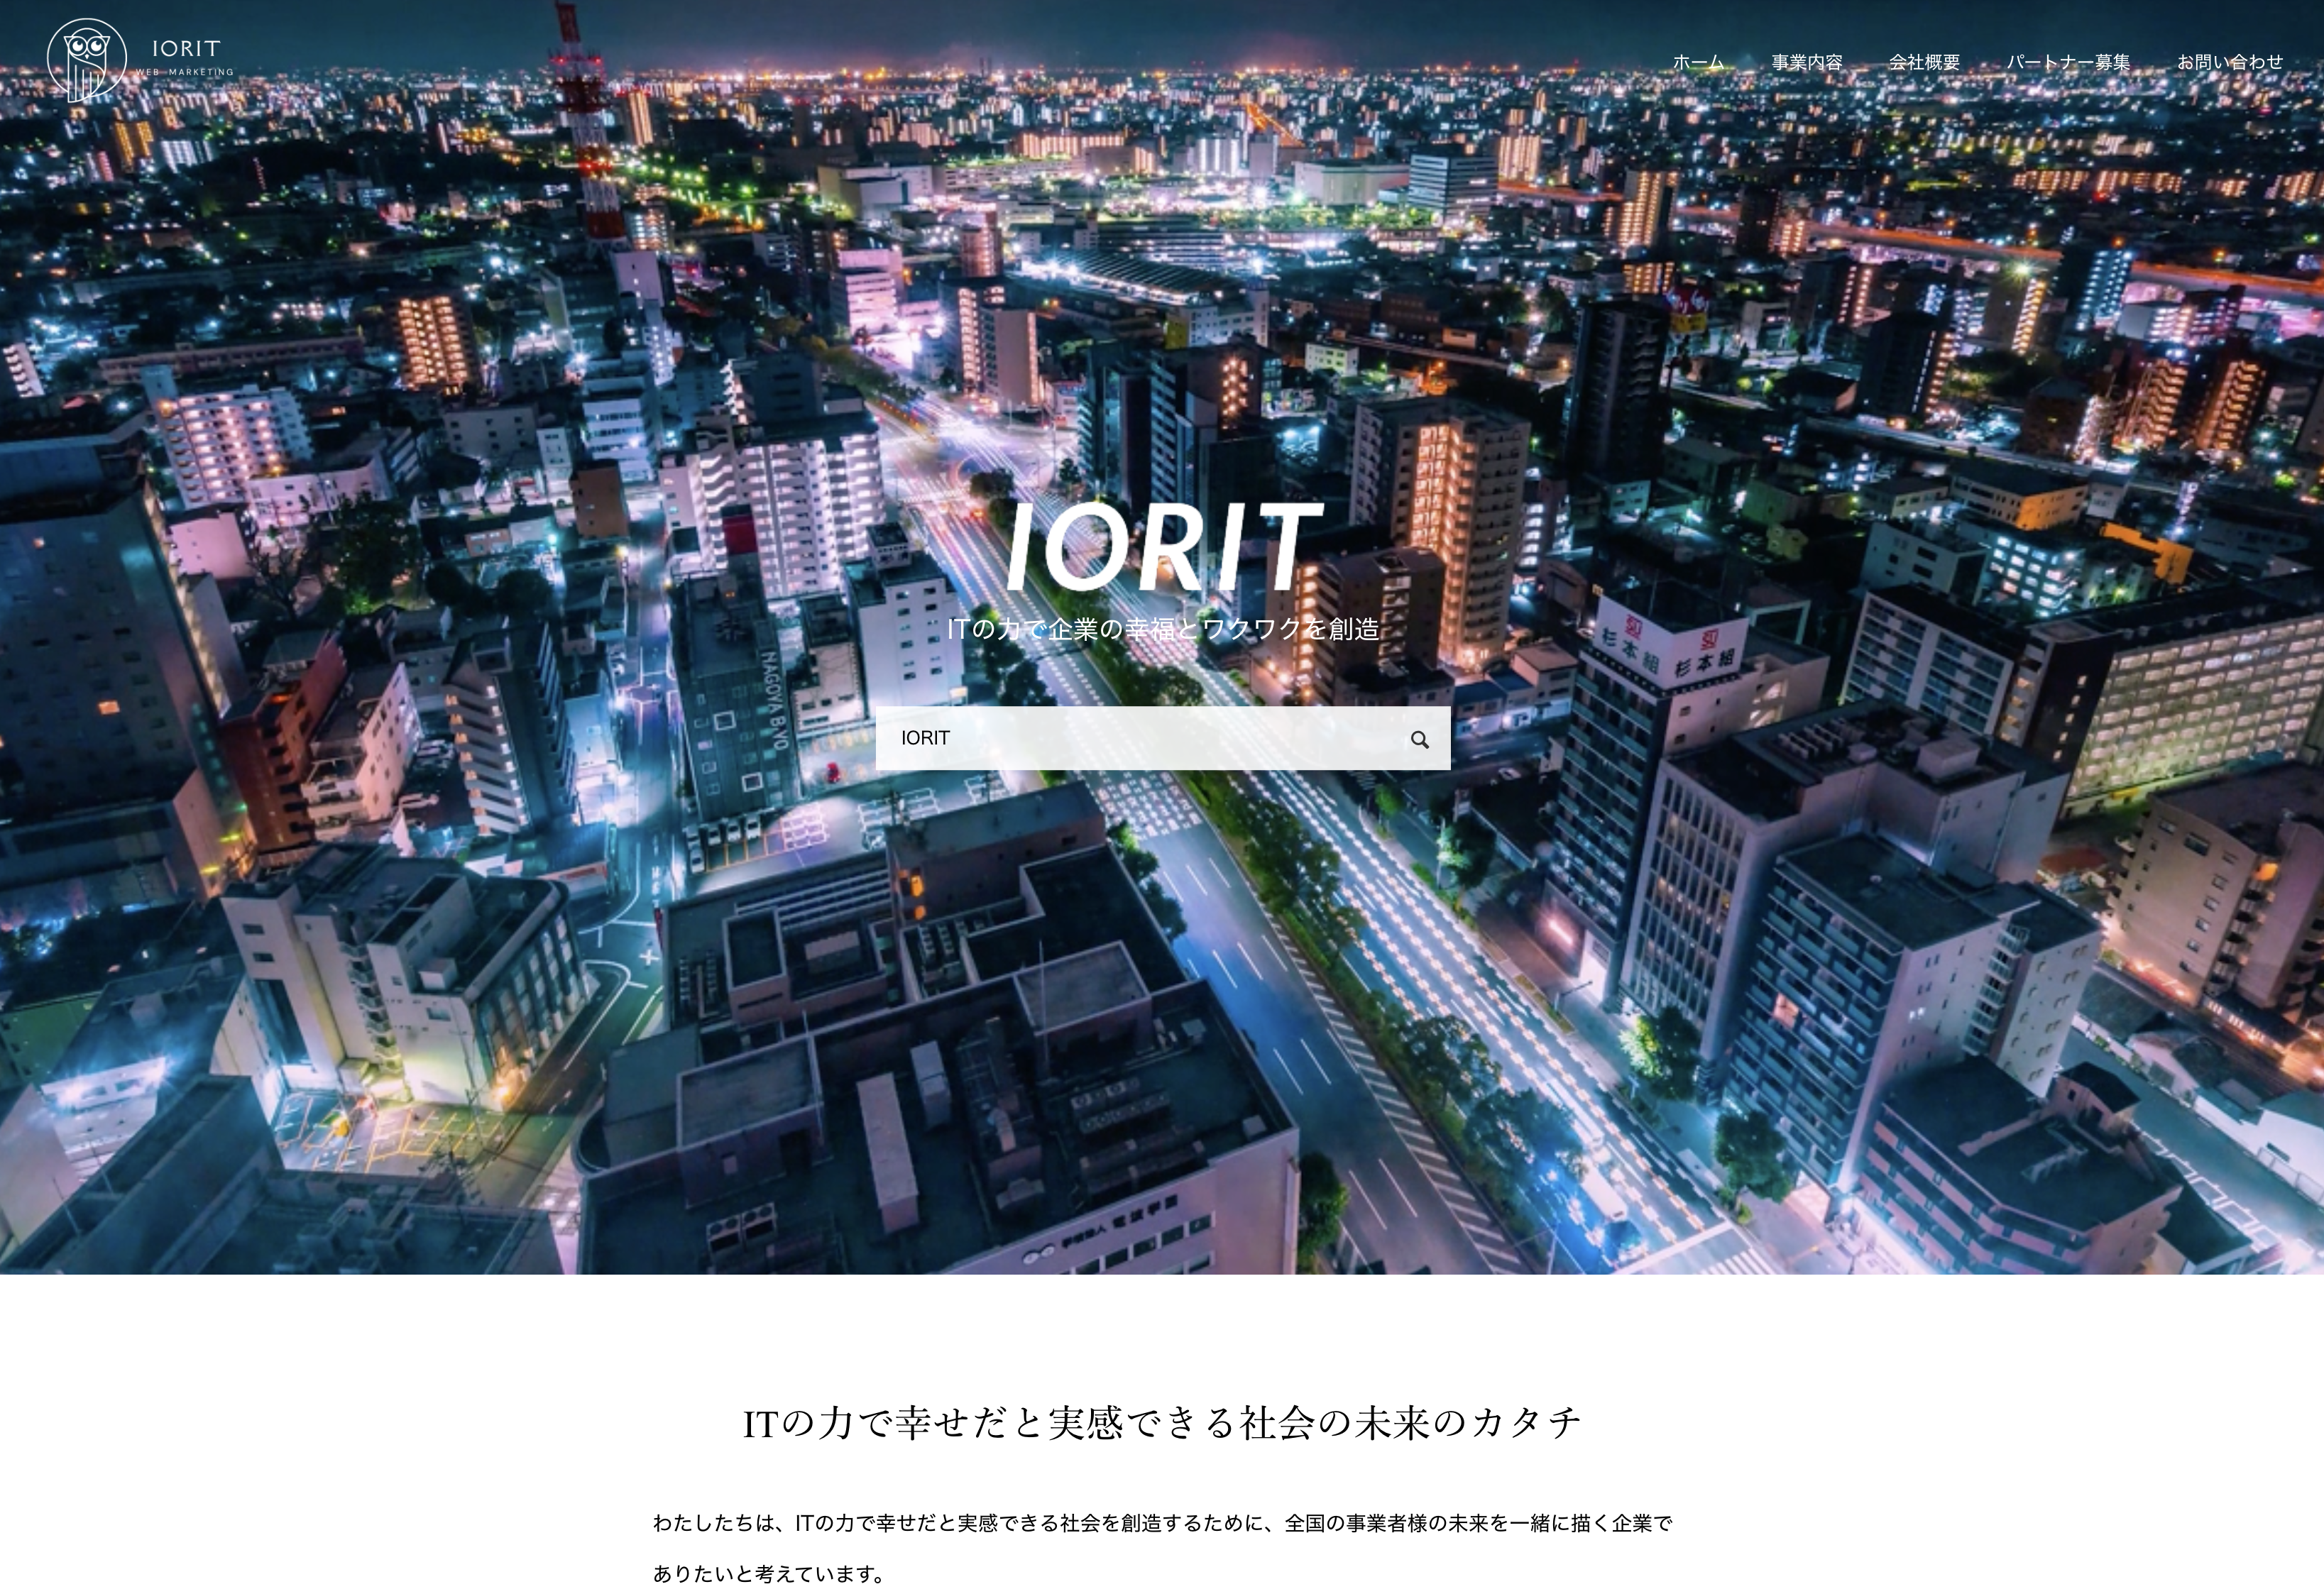 株式会社IORITの株式会社IORIT:マーケティングリサーチサービス